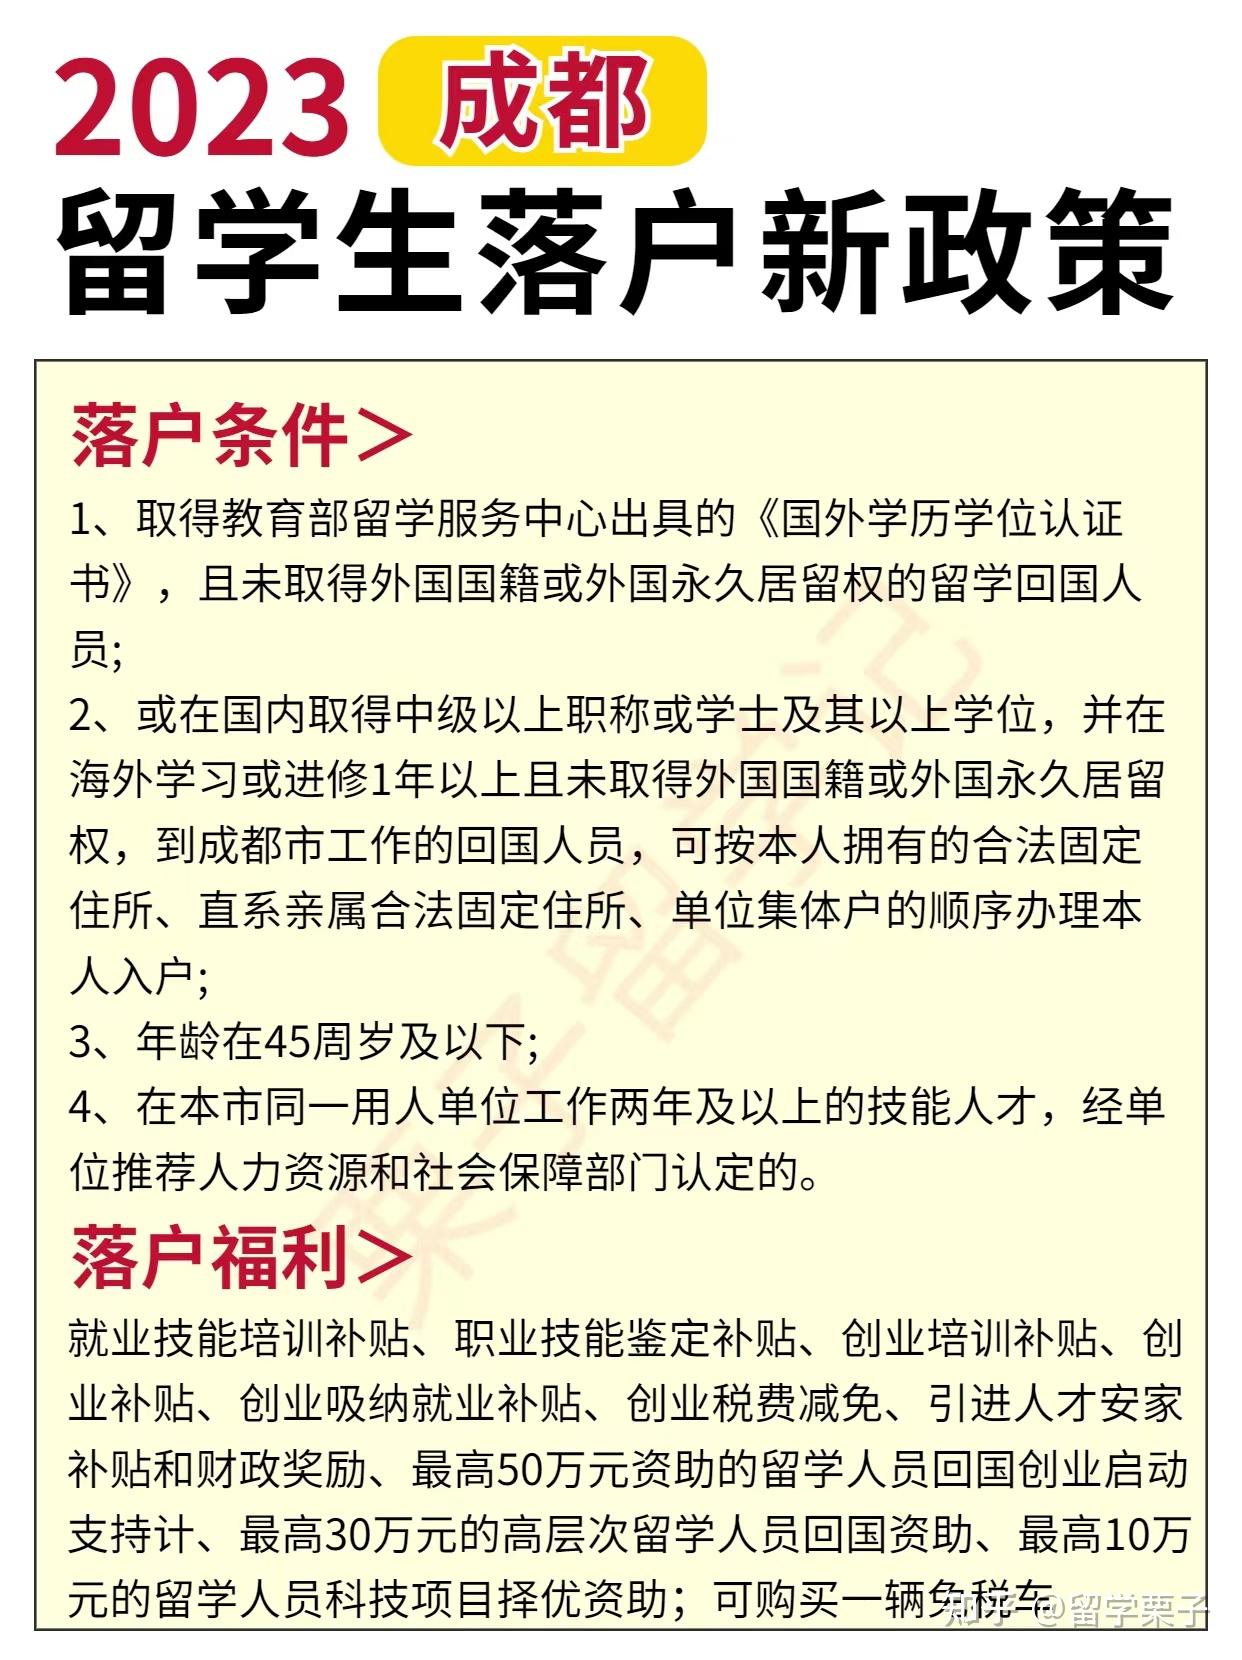 南京人才落户政策将延期至2021年5月31日;城南两盘明日摇号_户型图